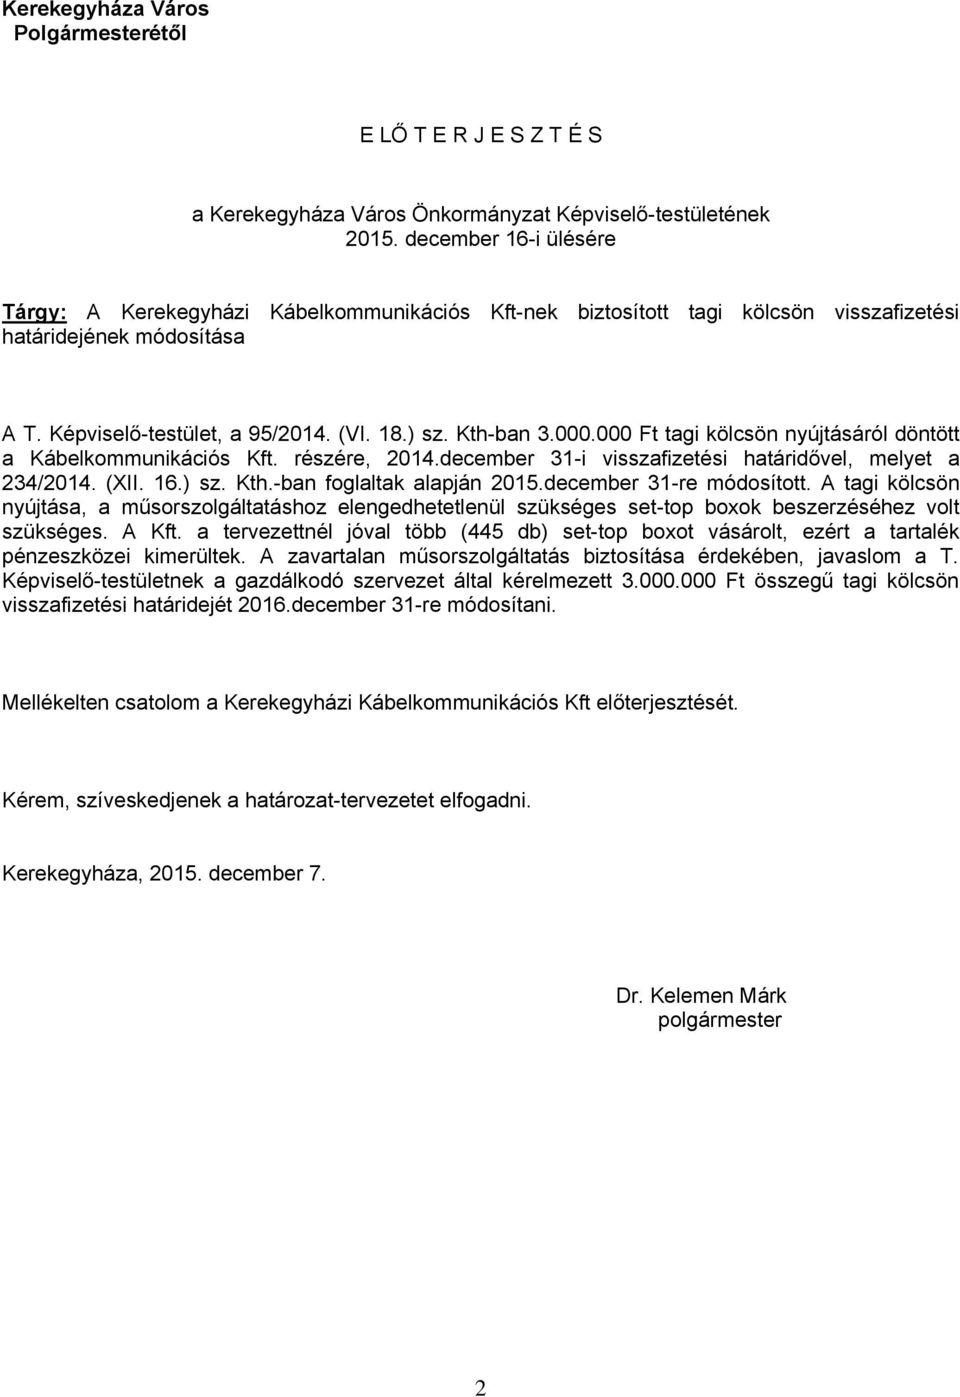 000 Ft tagi kölcsön nyújtásáról döntött a Kábelkommunikációs Kft. részére, 2014.december 31-i visszafizetési határidővel, melyet a 234/2014. (XII. 16.) sz. Kth.-ban foglaltak alapján 2015.